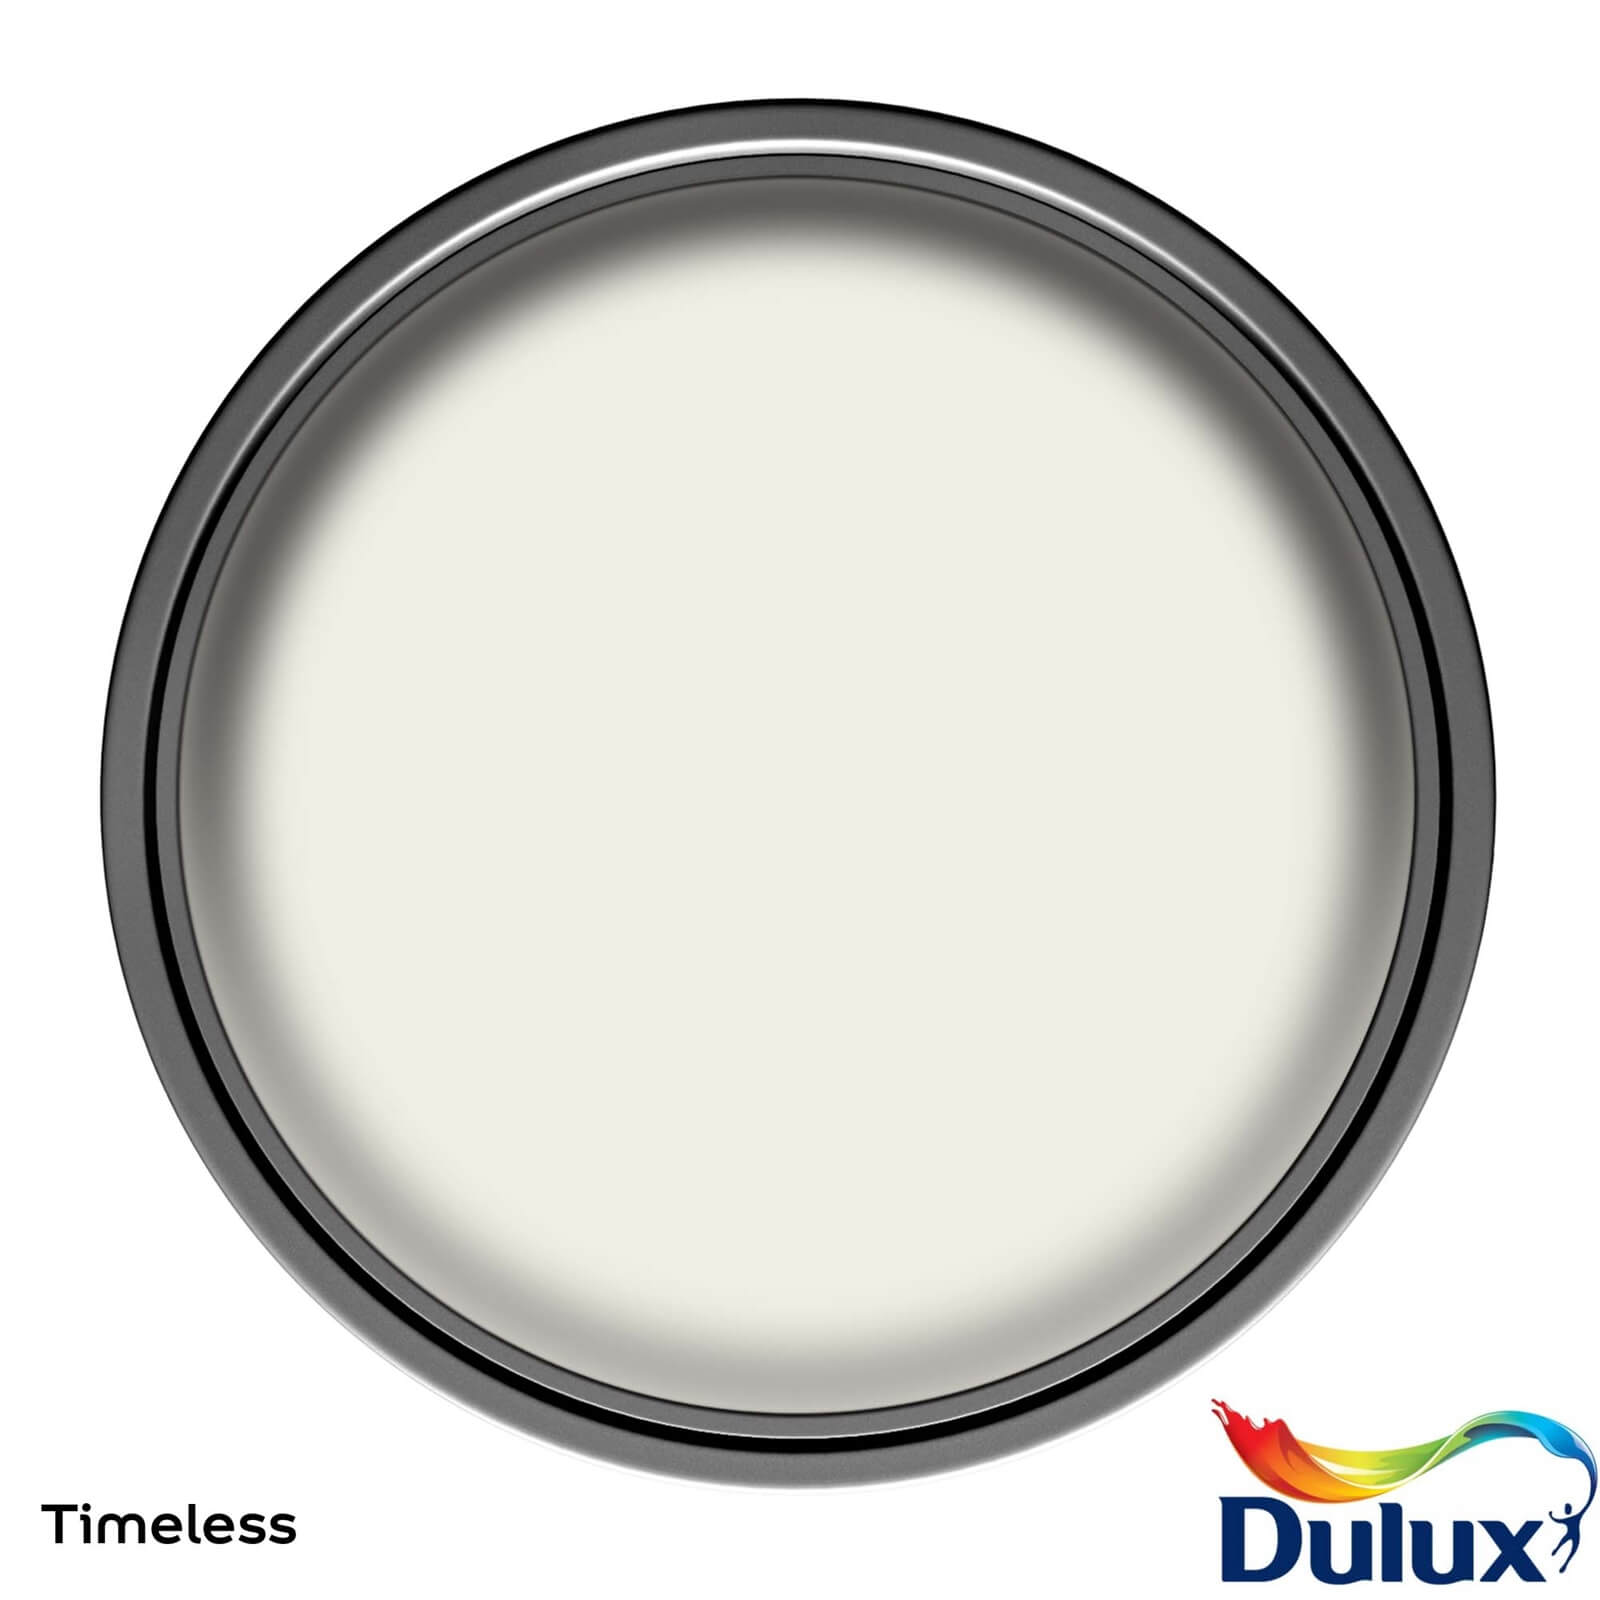 Dulux Easycare Washable & Tough Matt Paint Timeless - 2.5L